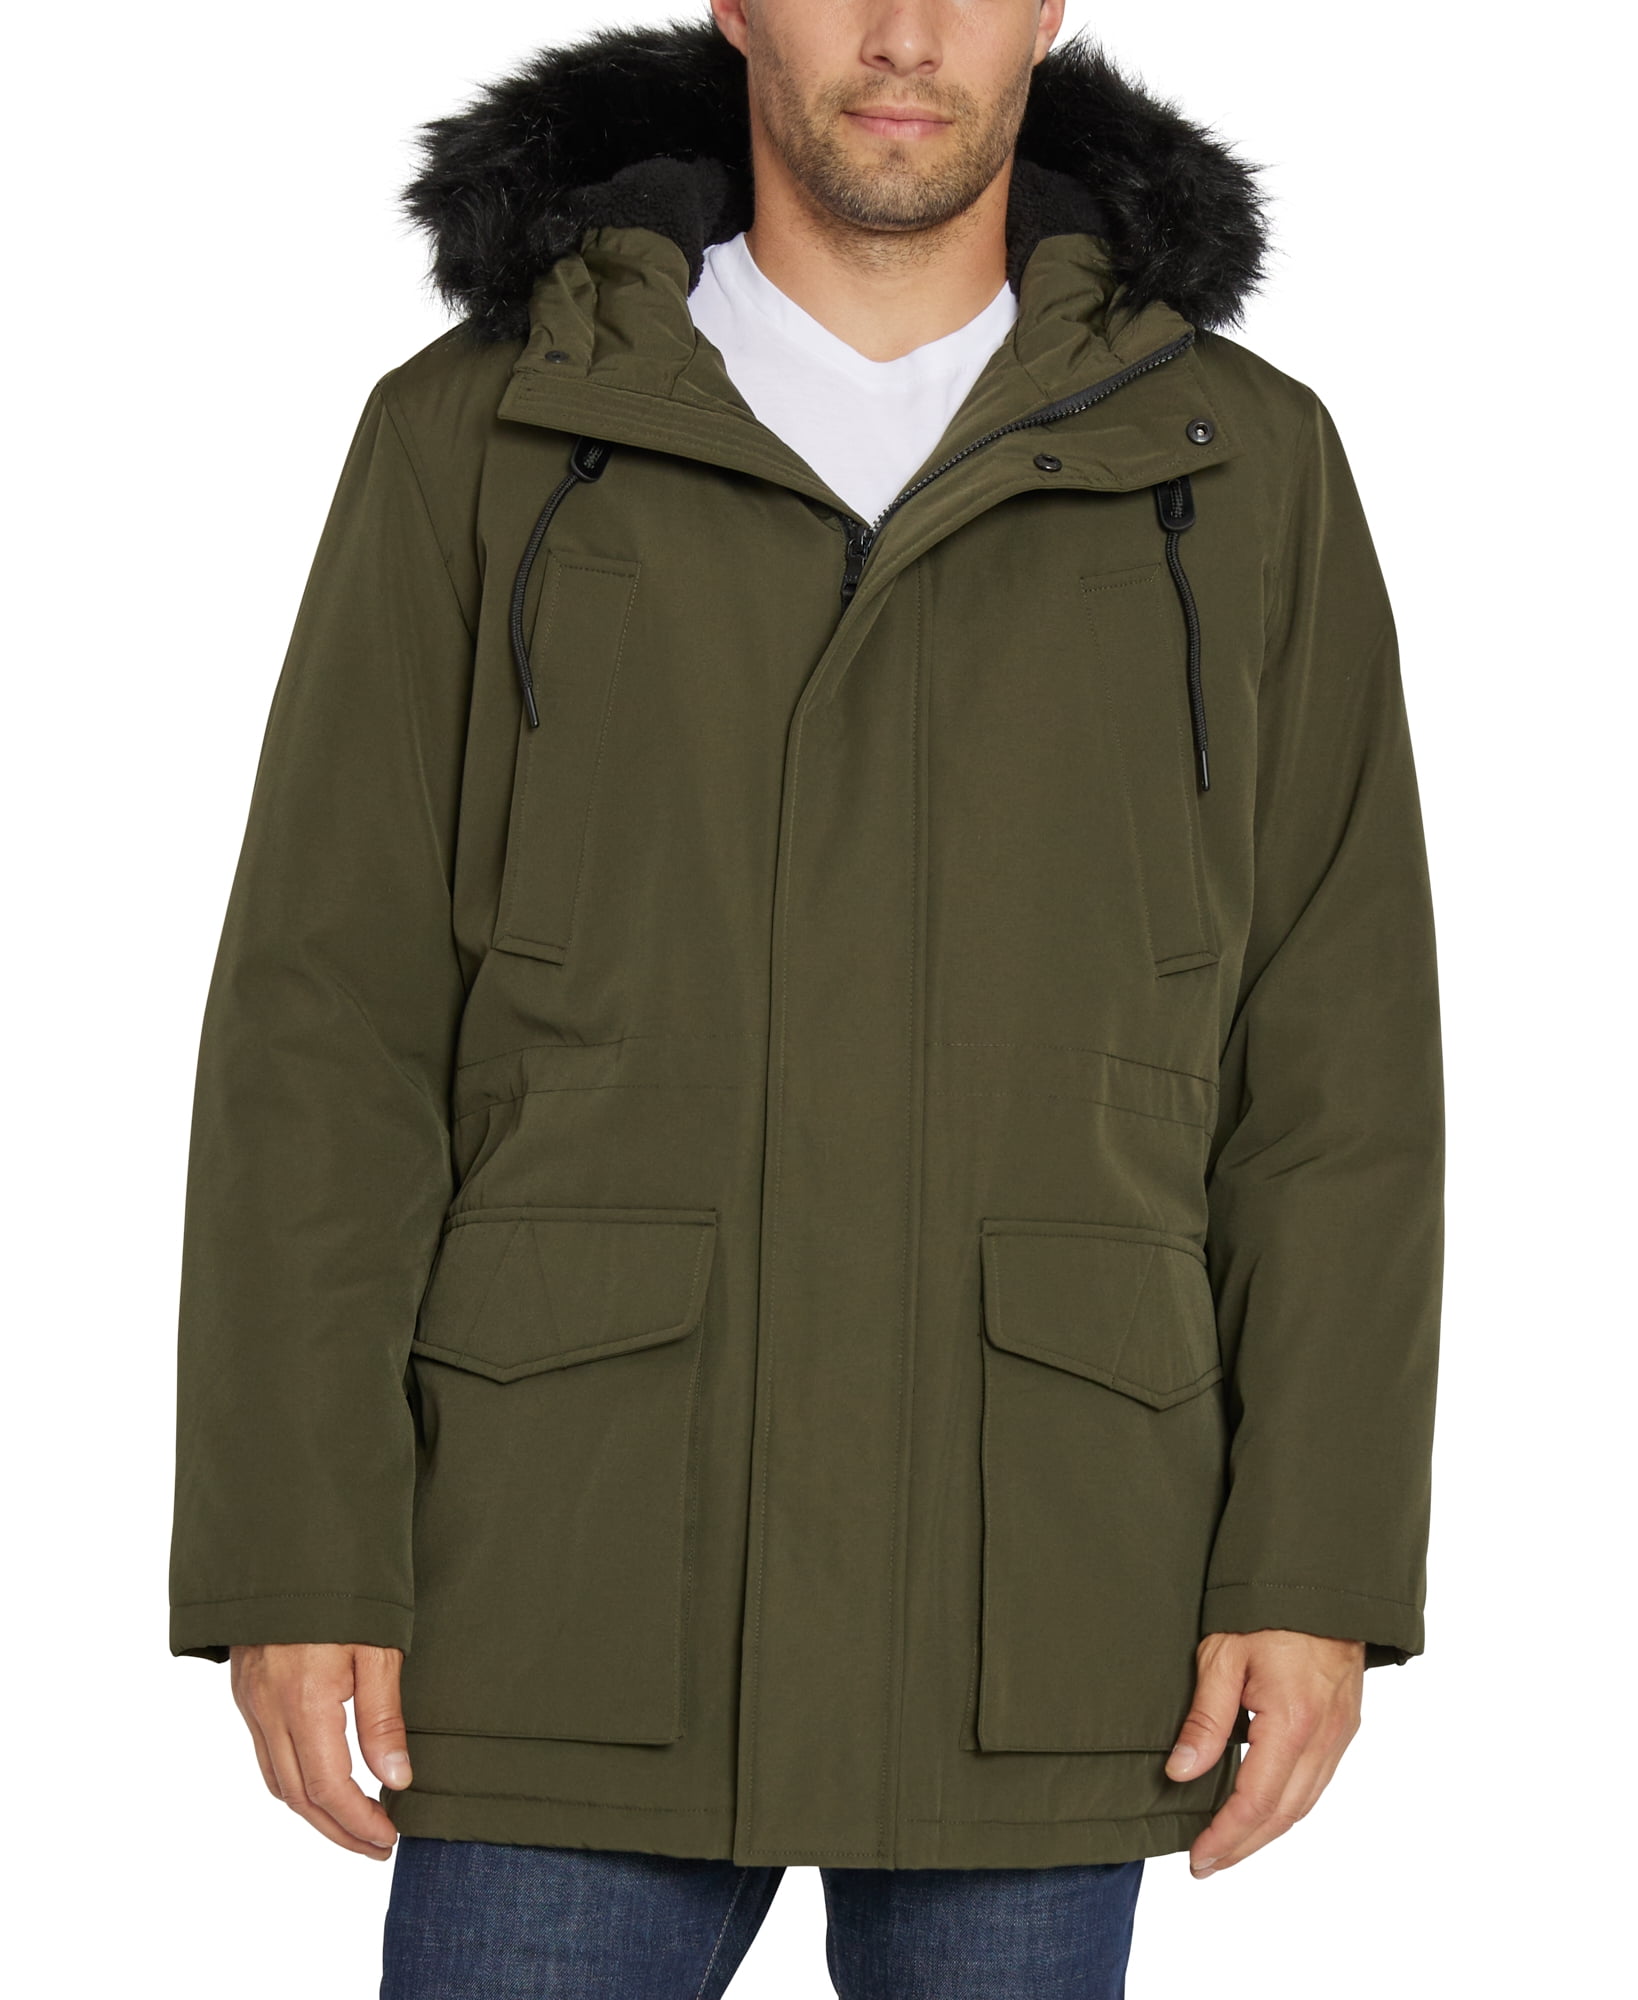 Sean John Men's Faux-Fur Trim Utility Parka Jacket, Sizes S-2XL ...